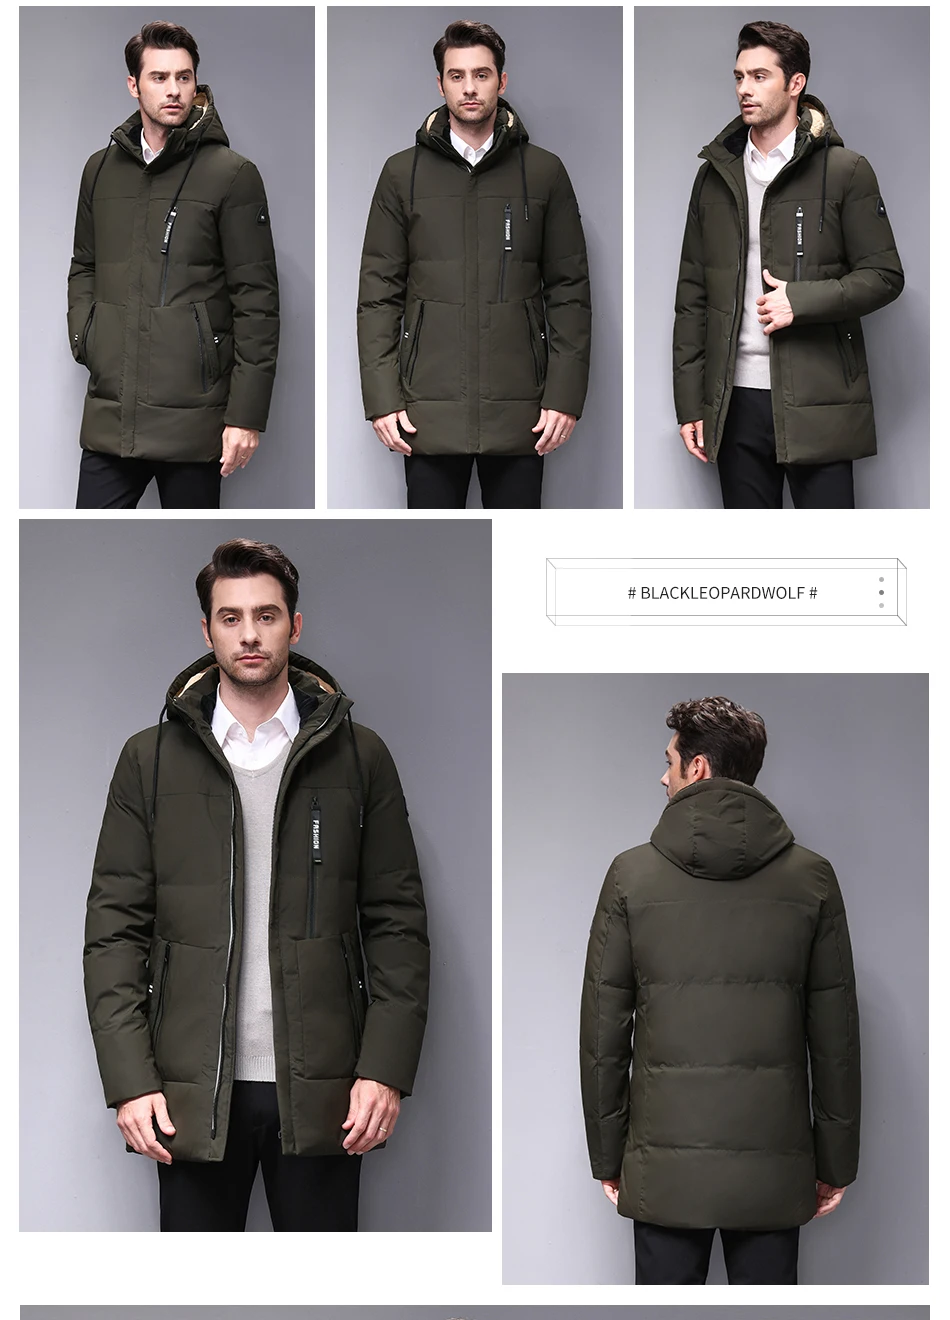 Blackleopardwolf Новое поступление зимнее пальто высокое качество повседневные мужские парки со съемным капюшоном пуховик мужская одежда для офиса BL-1000